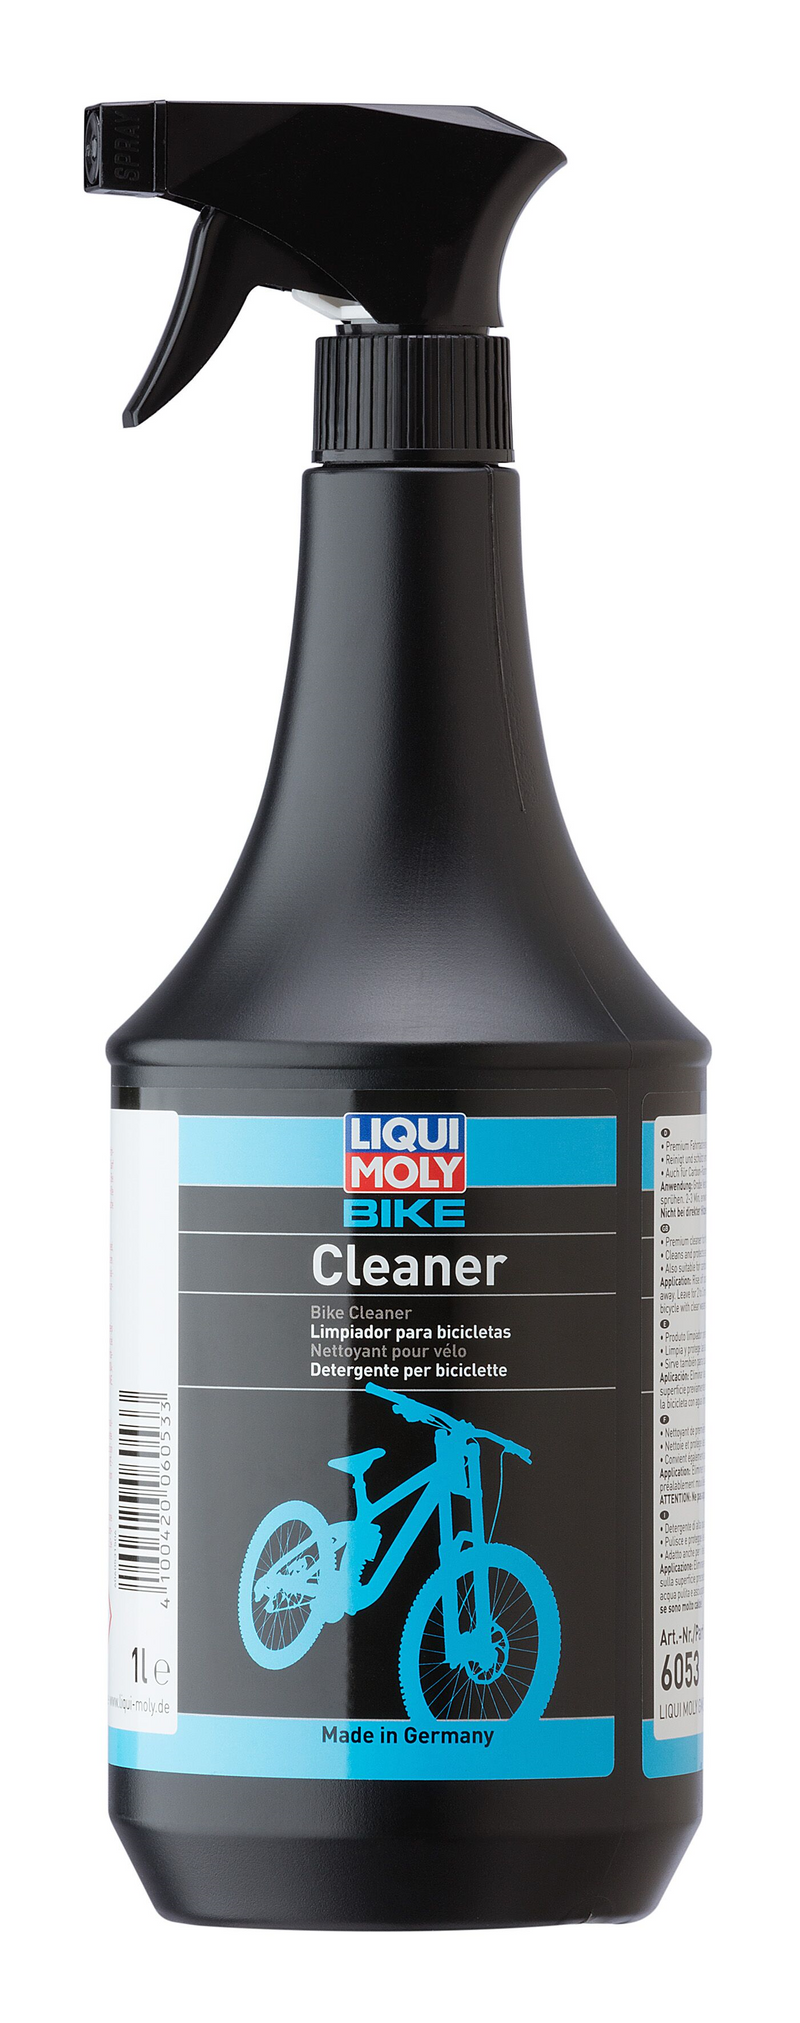 Detergente Liqui Moly Bike Cleaner (Especial para lavado de bicicletas)